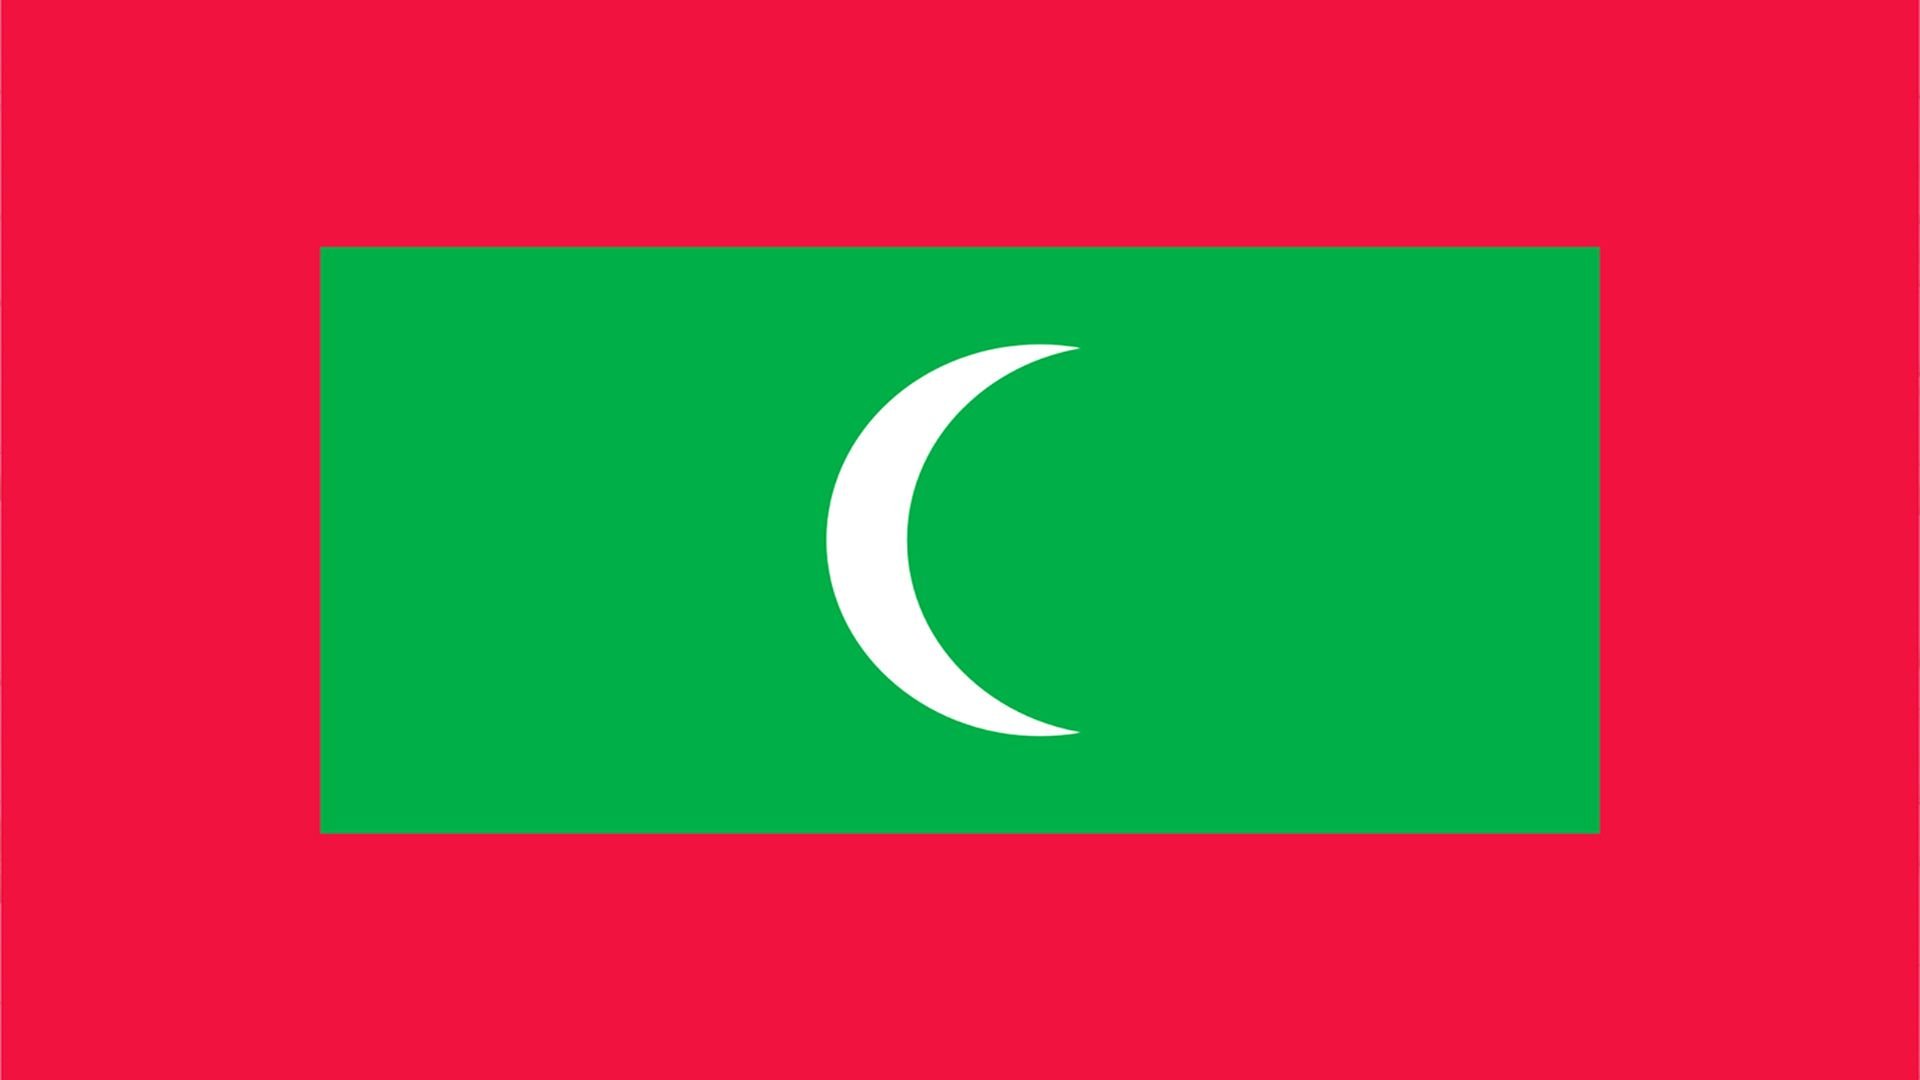 A bandeira das Maldivas traz um quadrado na cor verde que contém a Lua crescente na cor branca, além de uma borda de cor vermelha.